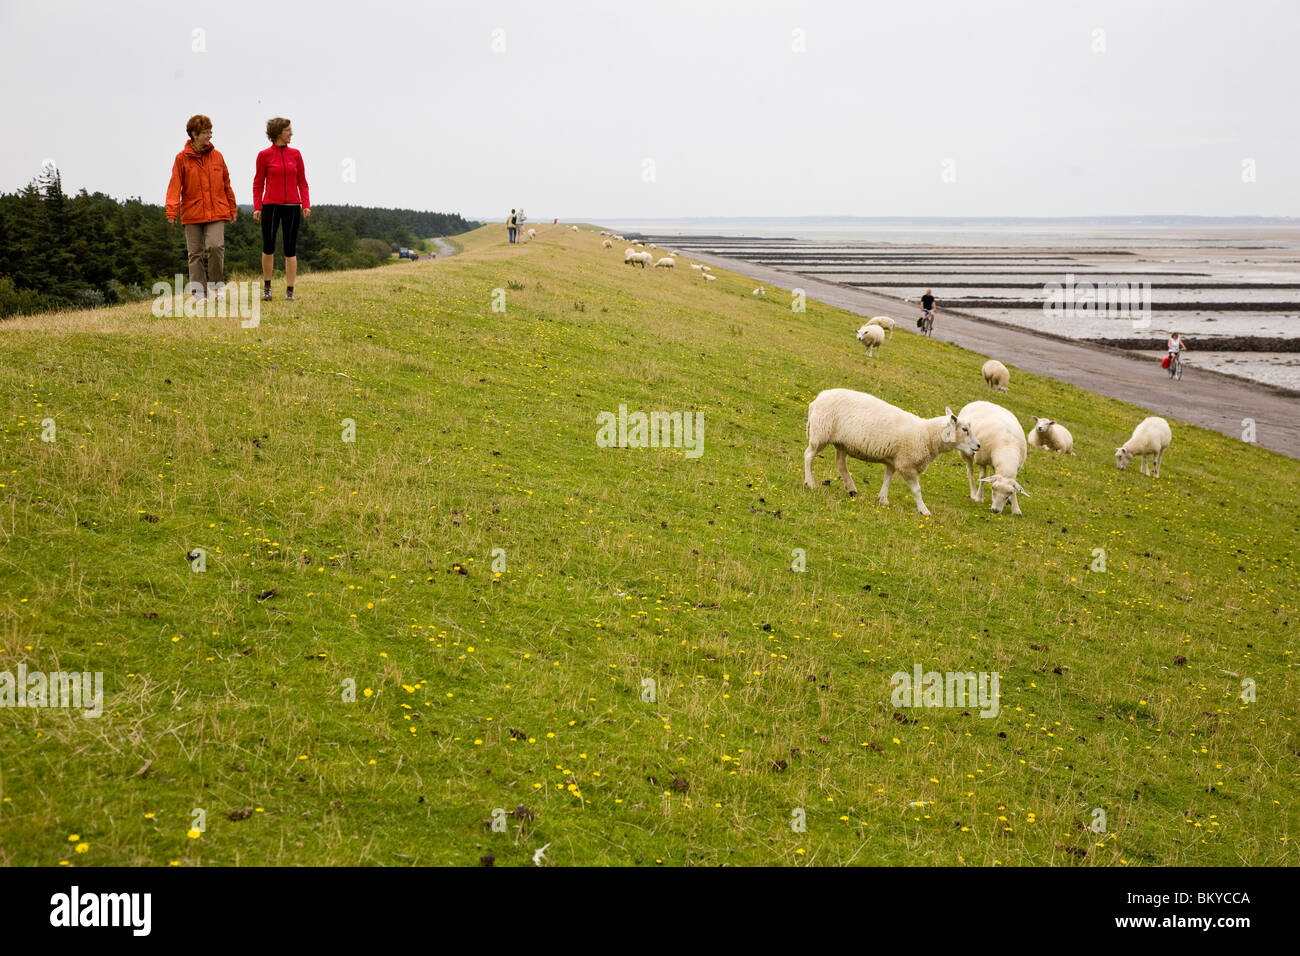 Les touristes à marcher le long de la digue de pâturage avec des moutons, Utersum, Foehr island, Schleswig-Holstein, Allemagne Banque D'Images